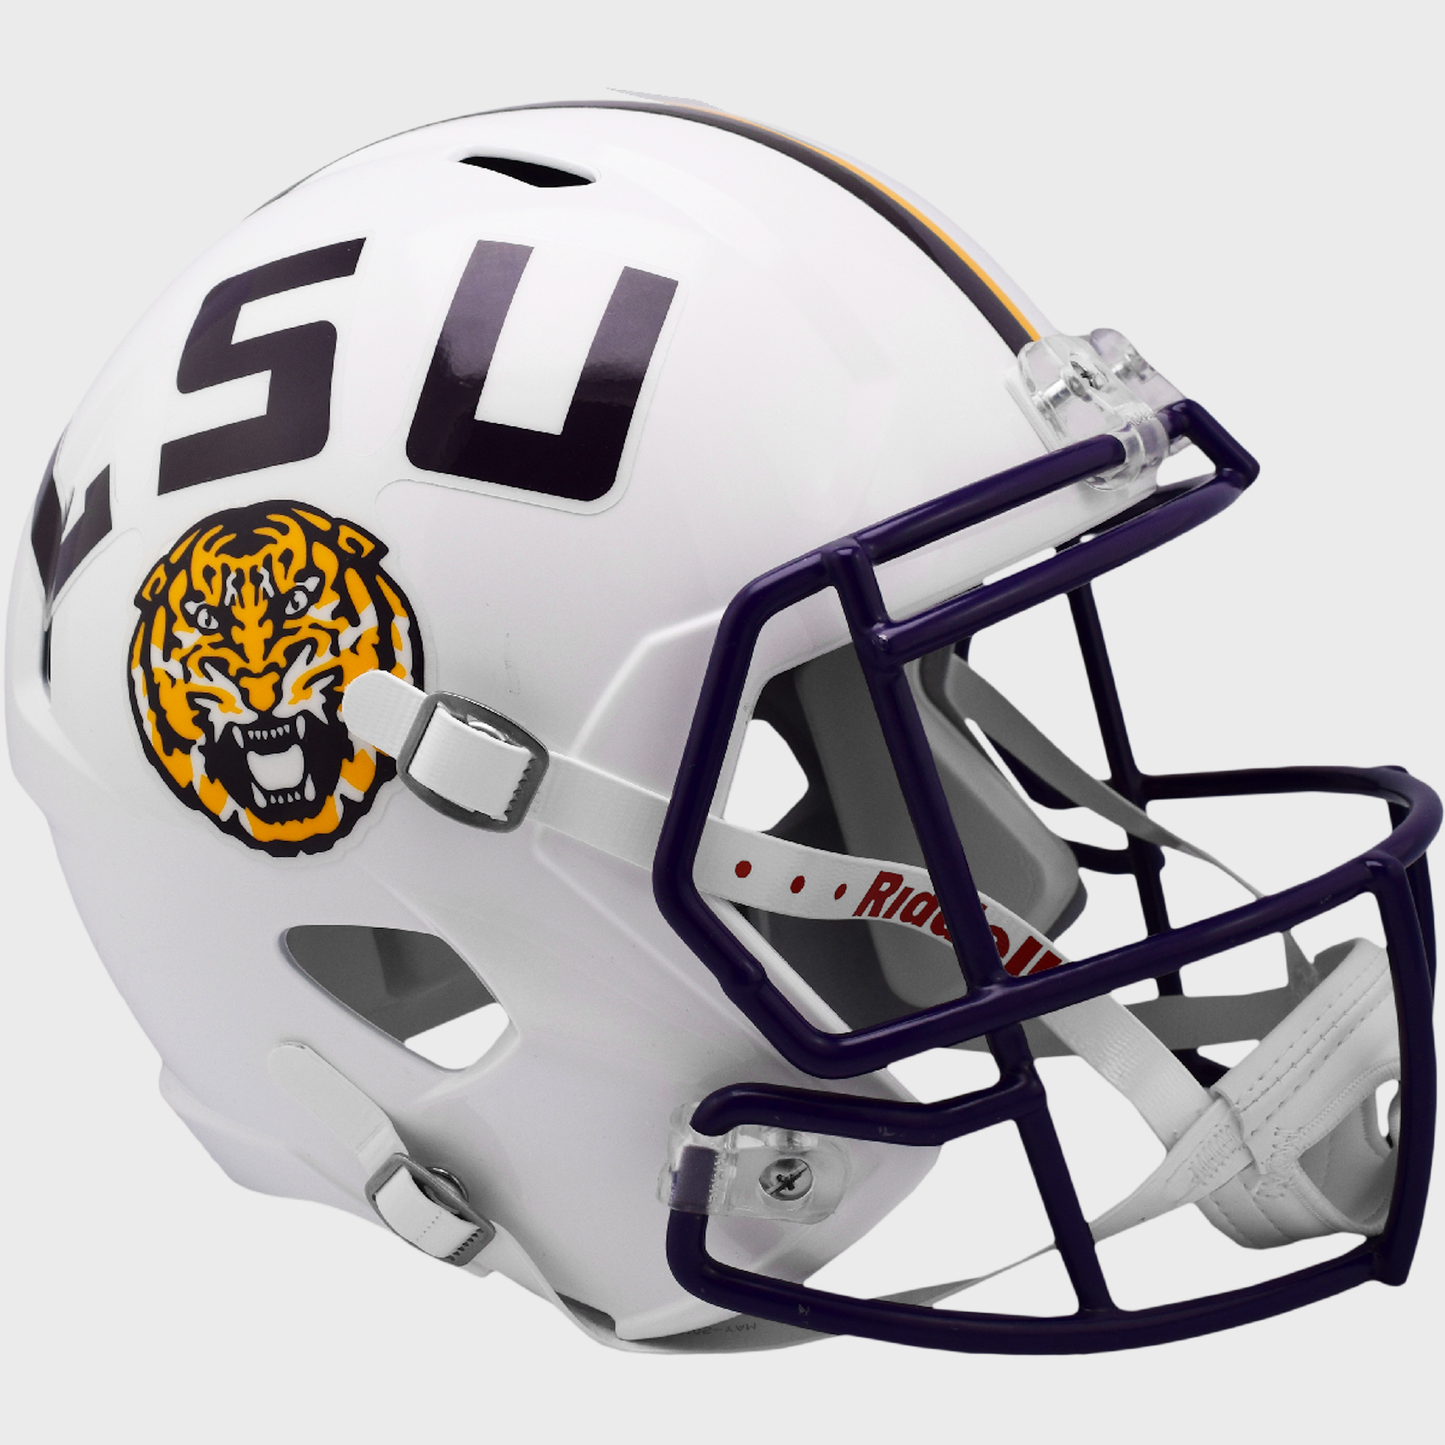 LSU Tigers full size replica helmet